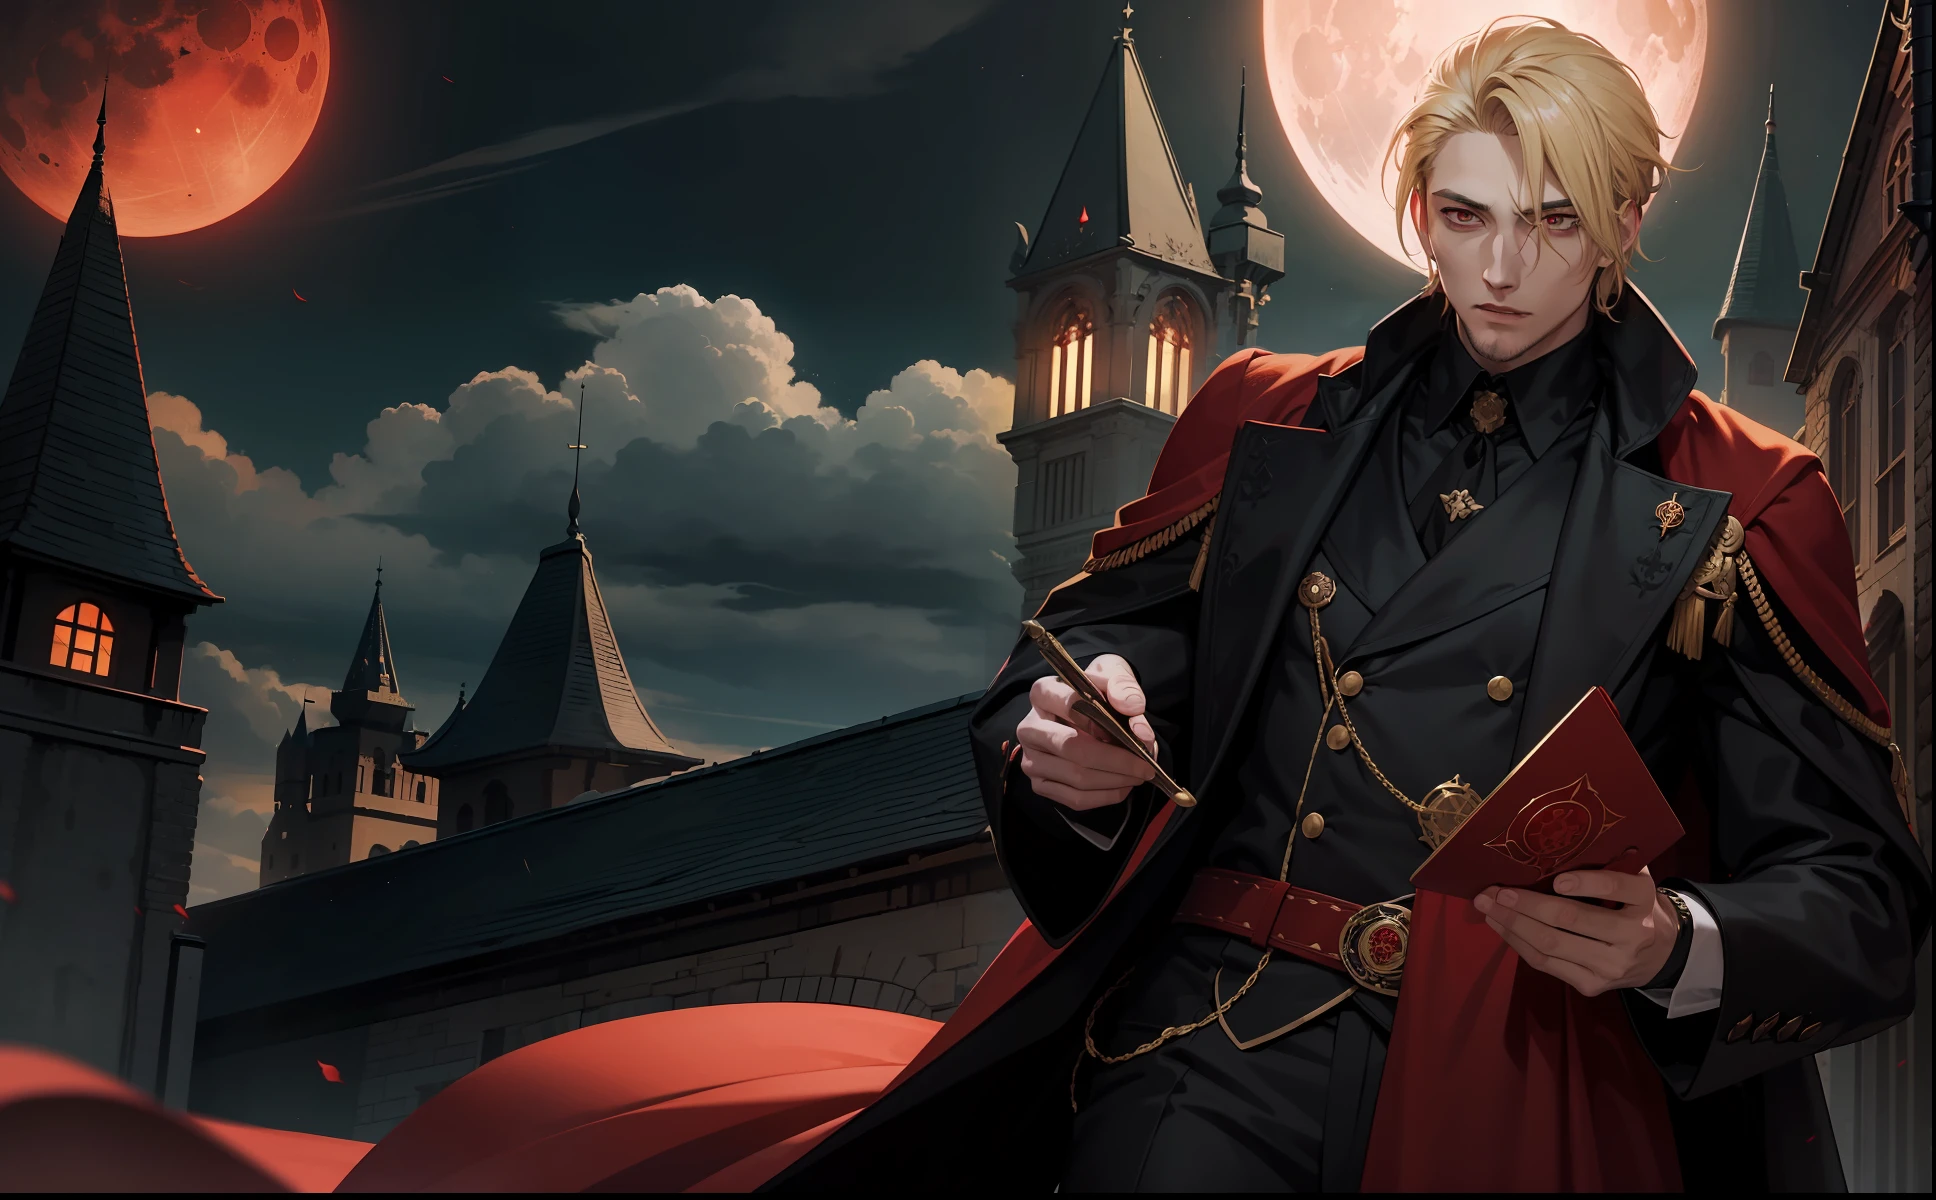 Un homme de 29 ans, un roi vampire aux cheveux blonds et aux yeux rouges, il porte une robe marron et une tenue noire avec du rouge. (Senarius une nuit de lune sanglante dans un château royal)